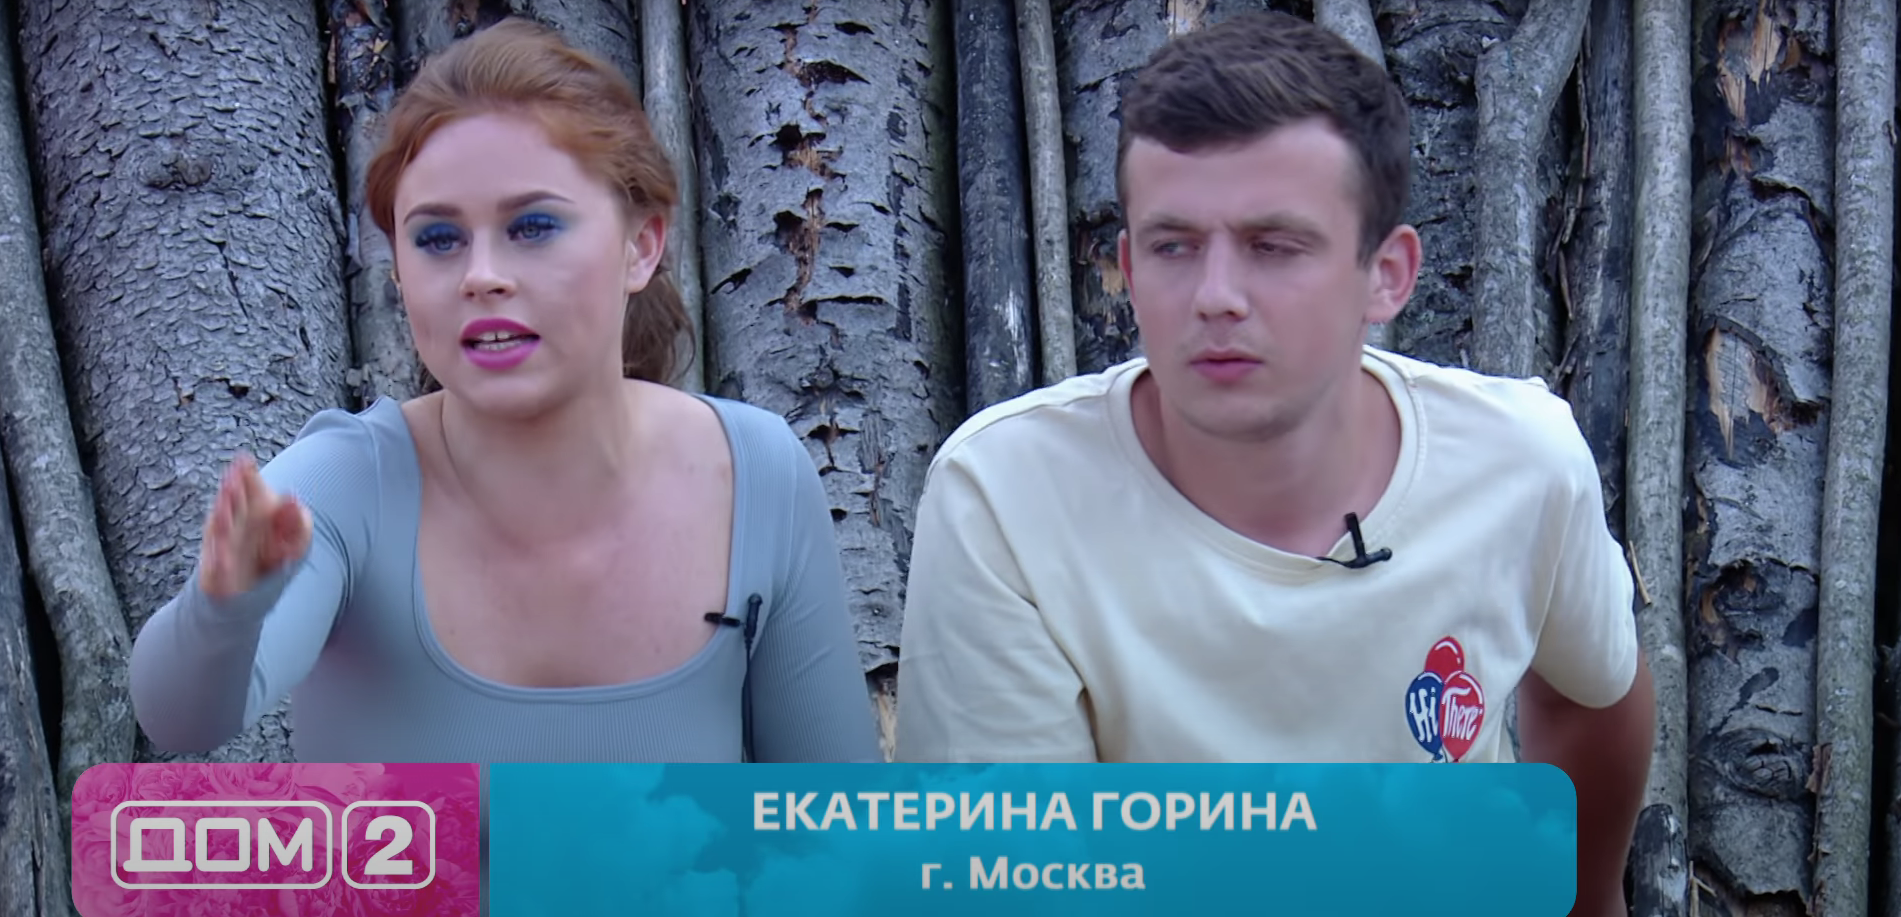 Дмитрий Антошкин хочет вернуться на дом 2 и испортить жизнь Кате Гориной